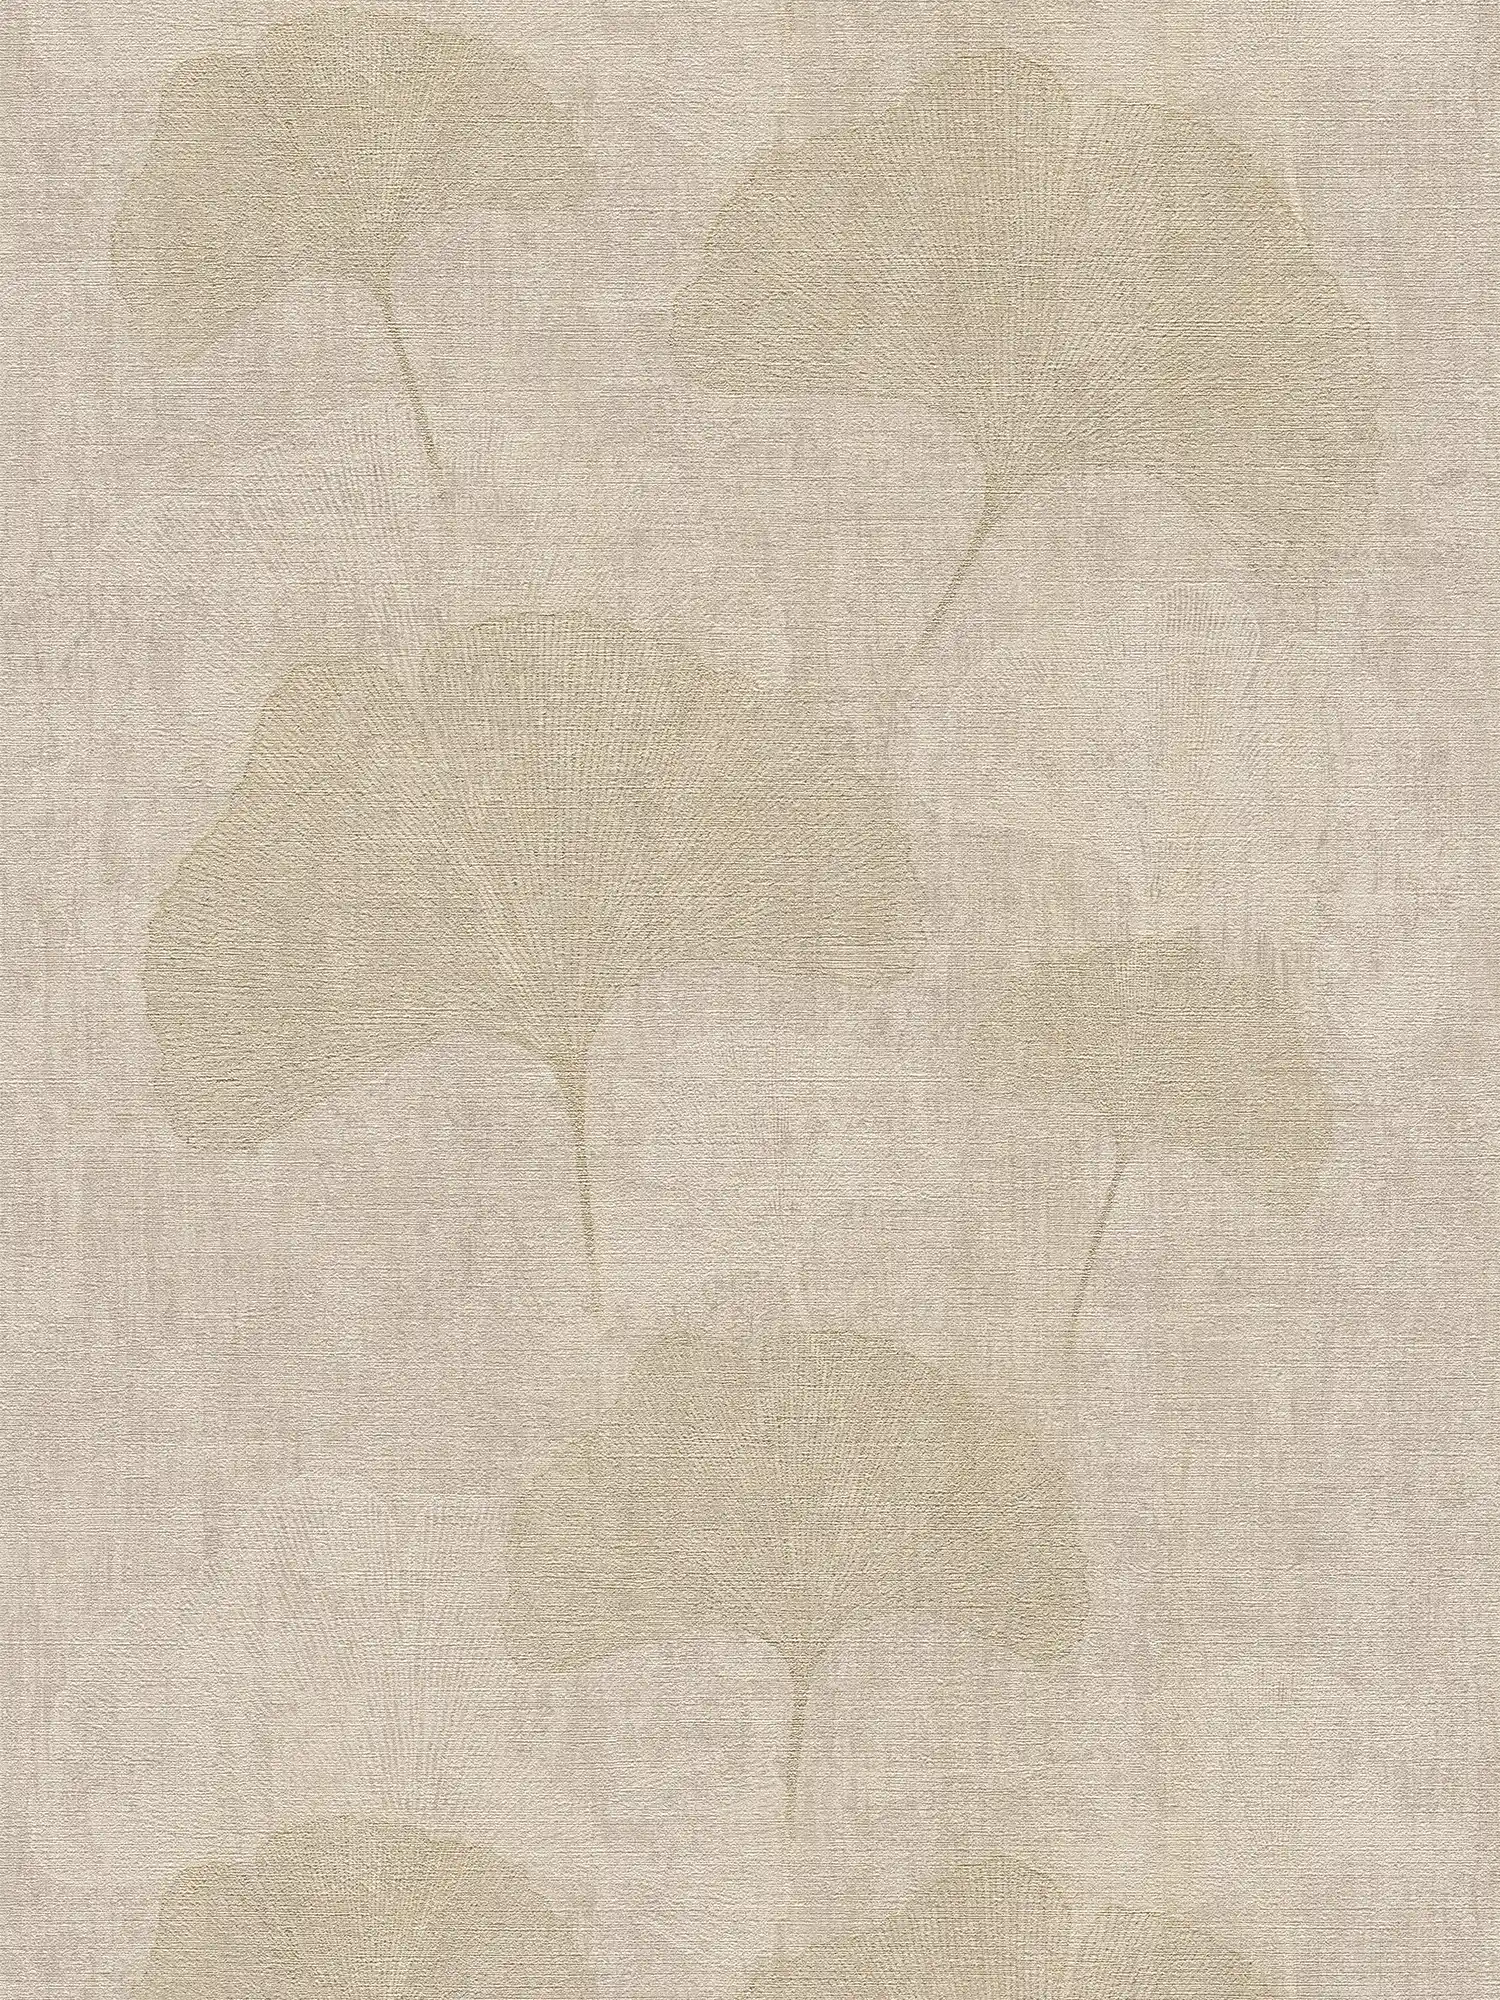 Papier peint Ginko Design avec effet doré & hachures de couleur - beige, métallique
